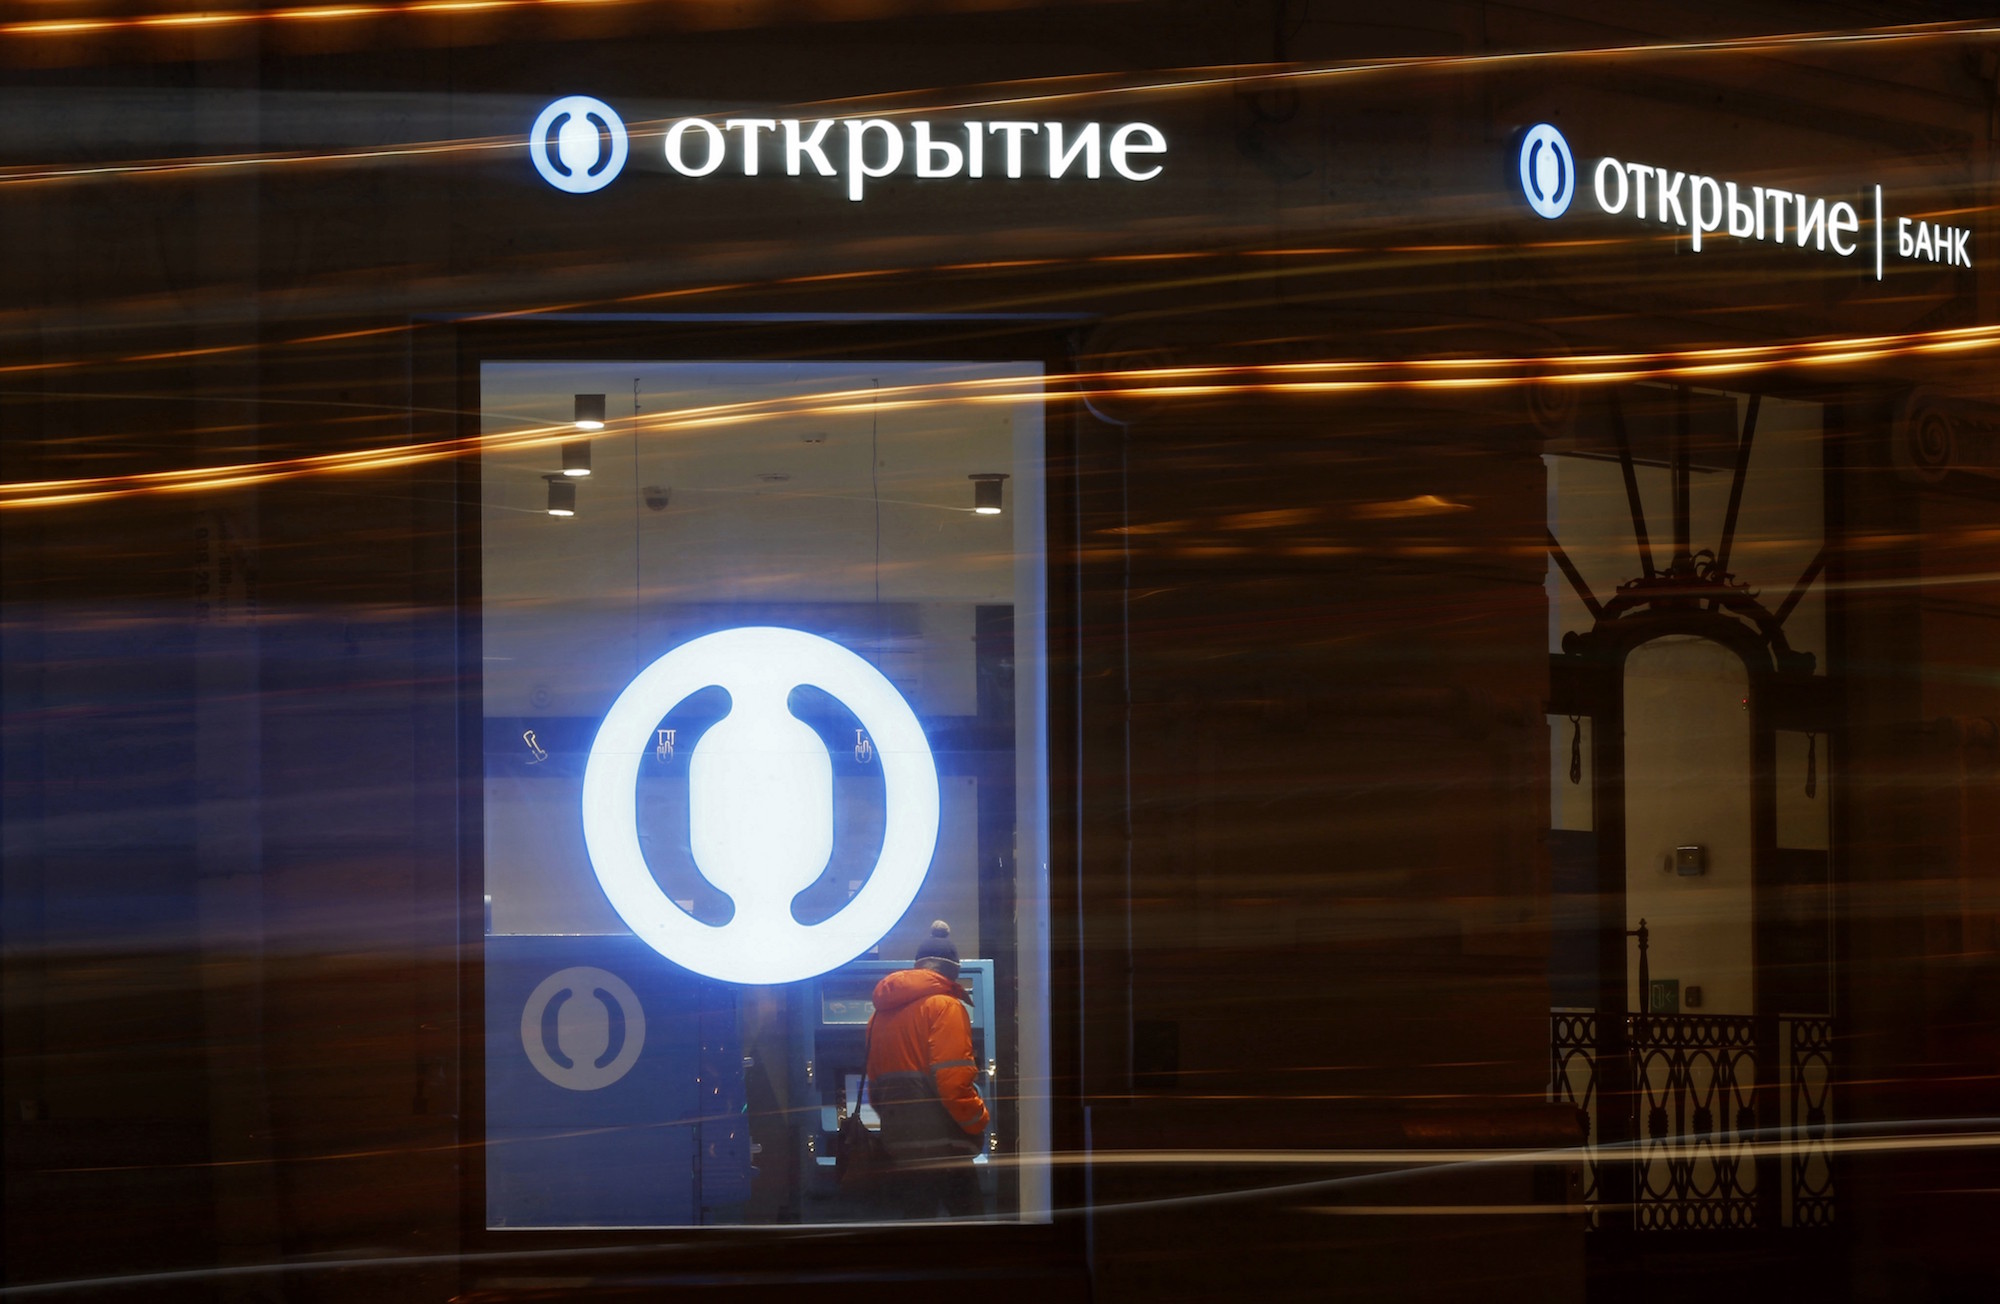 Российский банк открытие